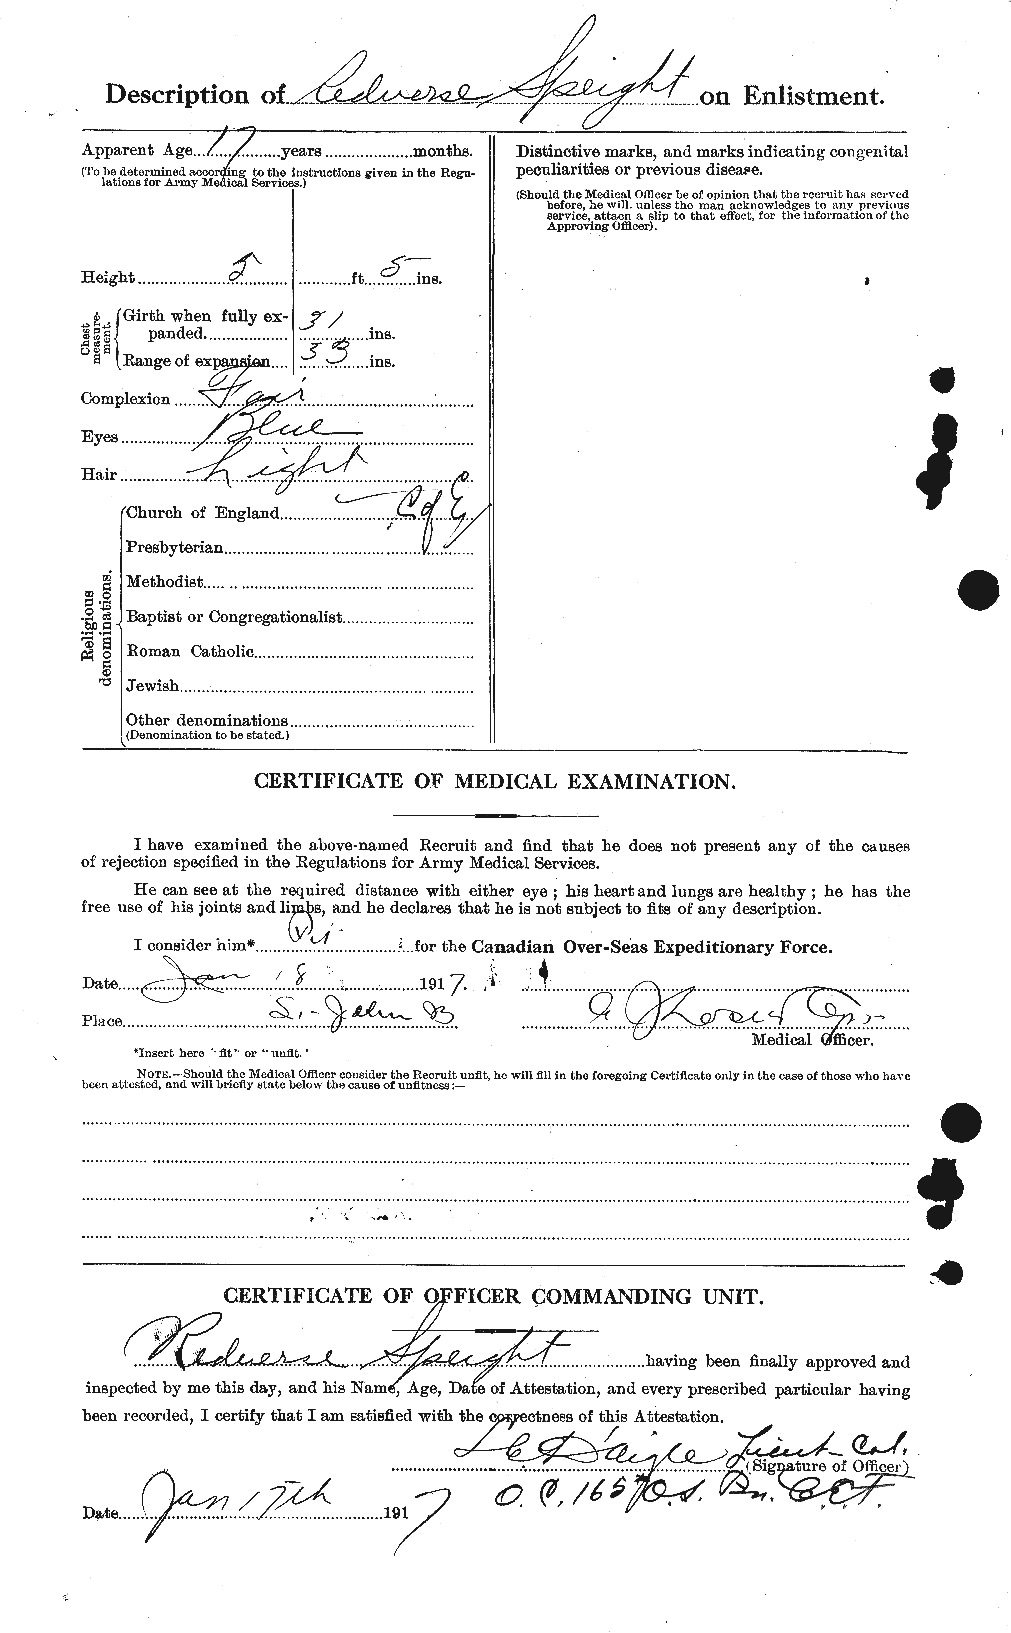 Dossiers du Personnel de la Première Guerre mondiale - CEC 110064b